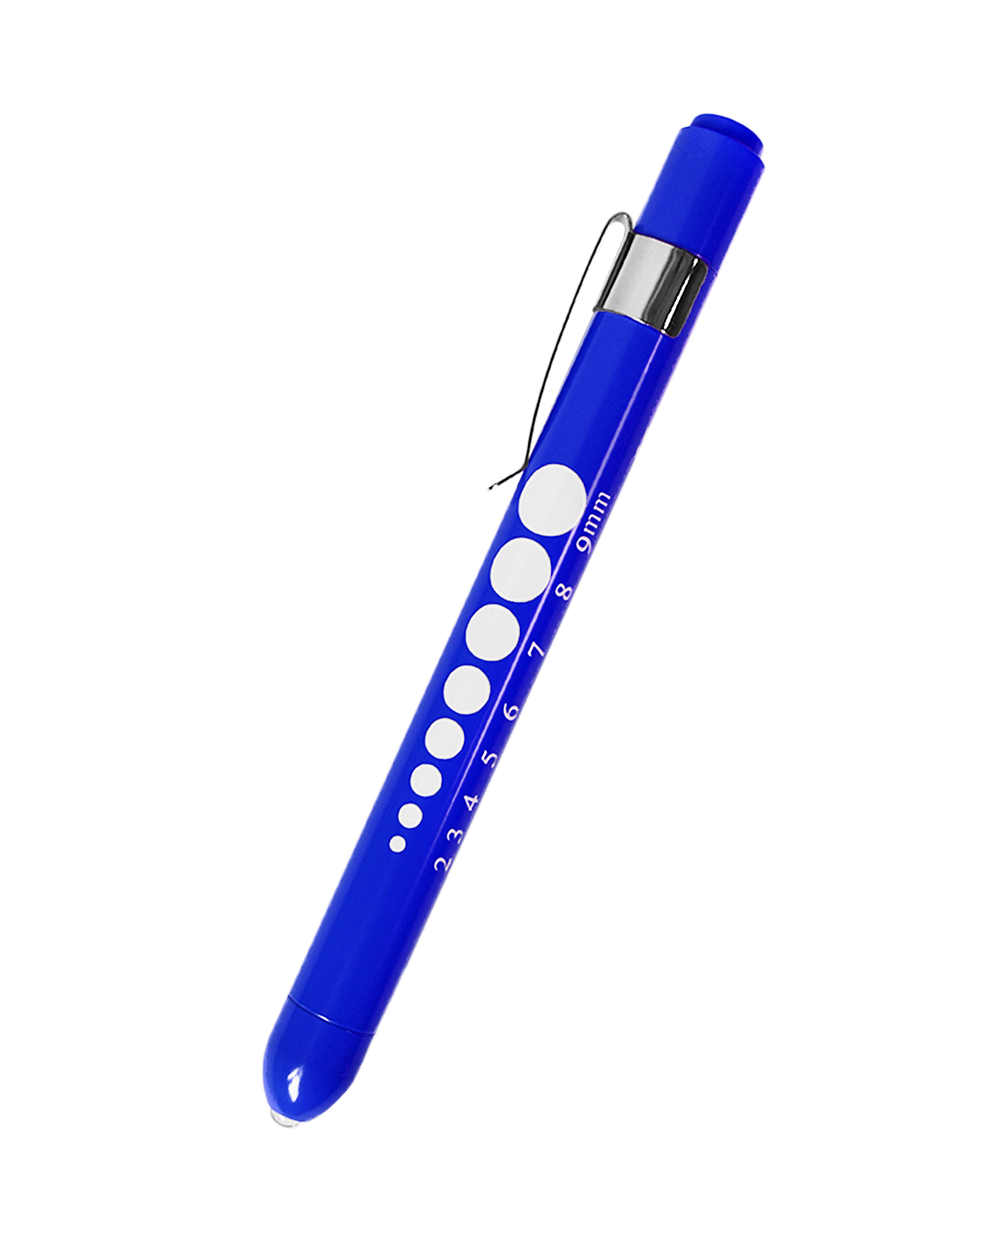 LED Penlight Pen Light Torch with Pupil Gauge Medical Doctor Nurse Emergency